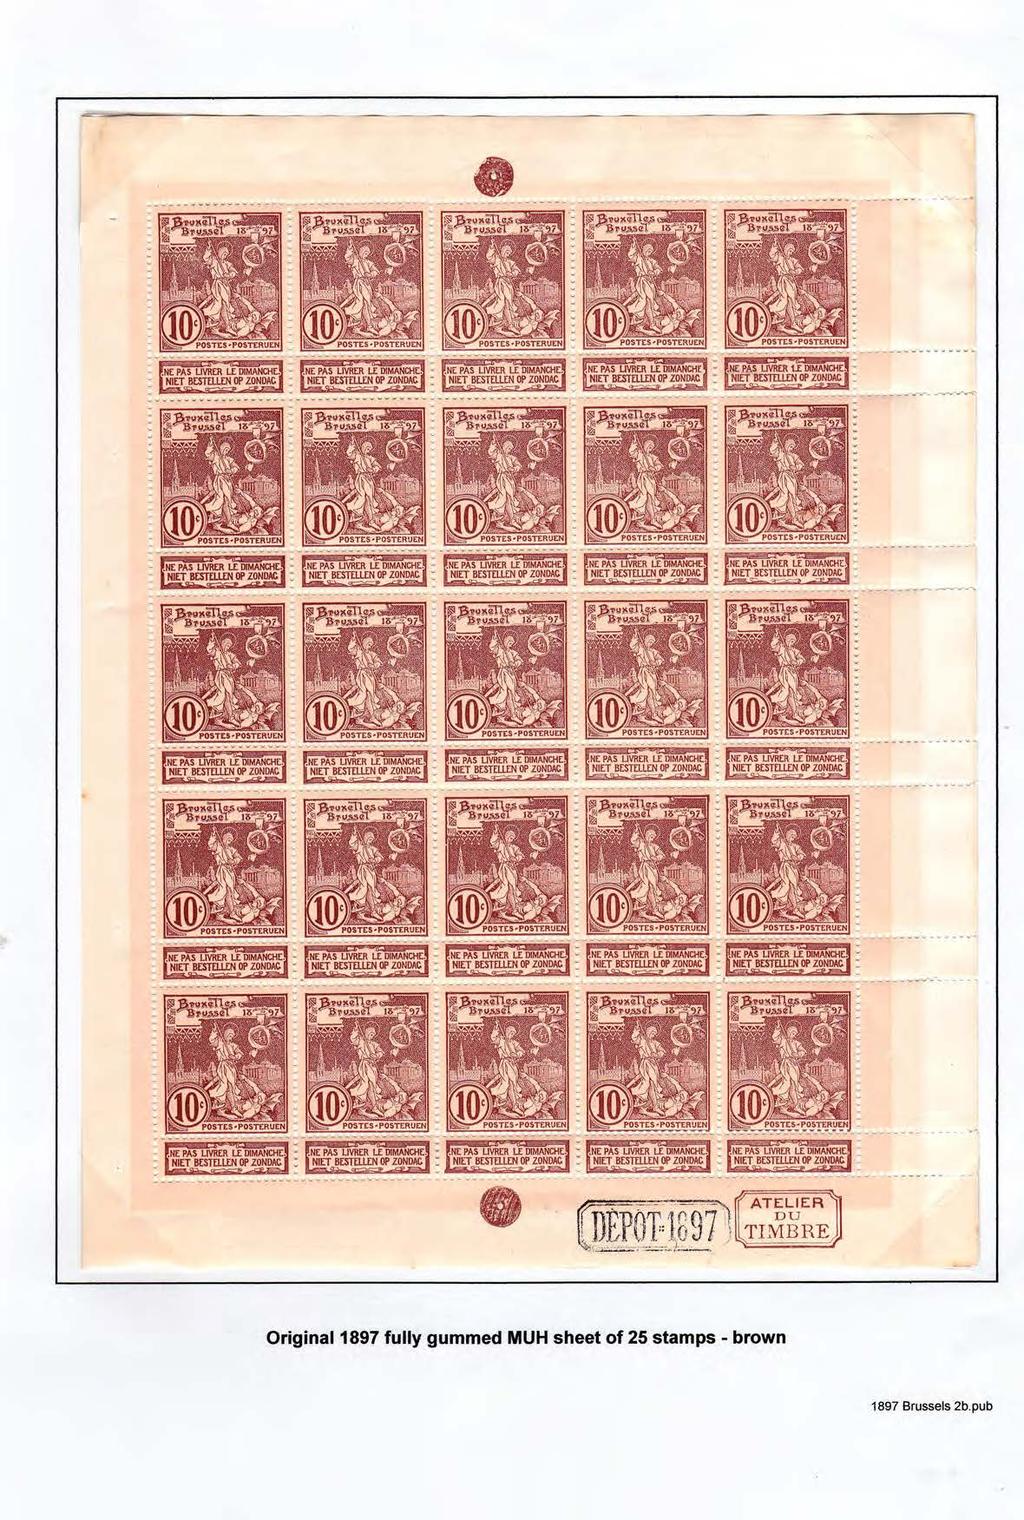 Original 1897 fully gummed MUH sheet